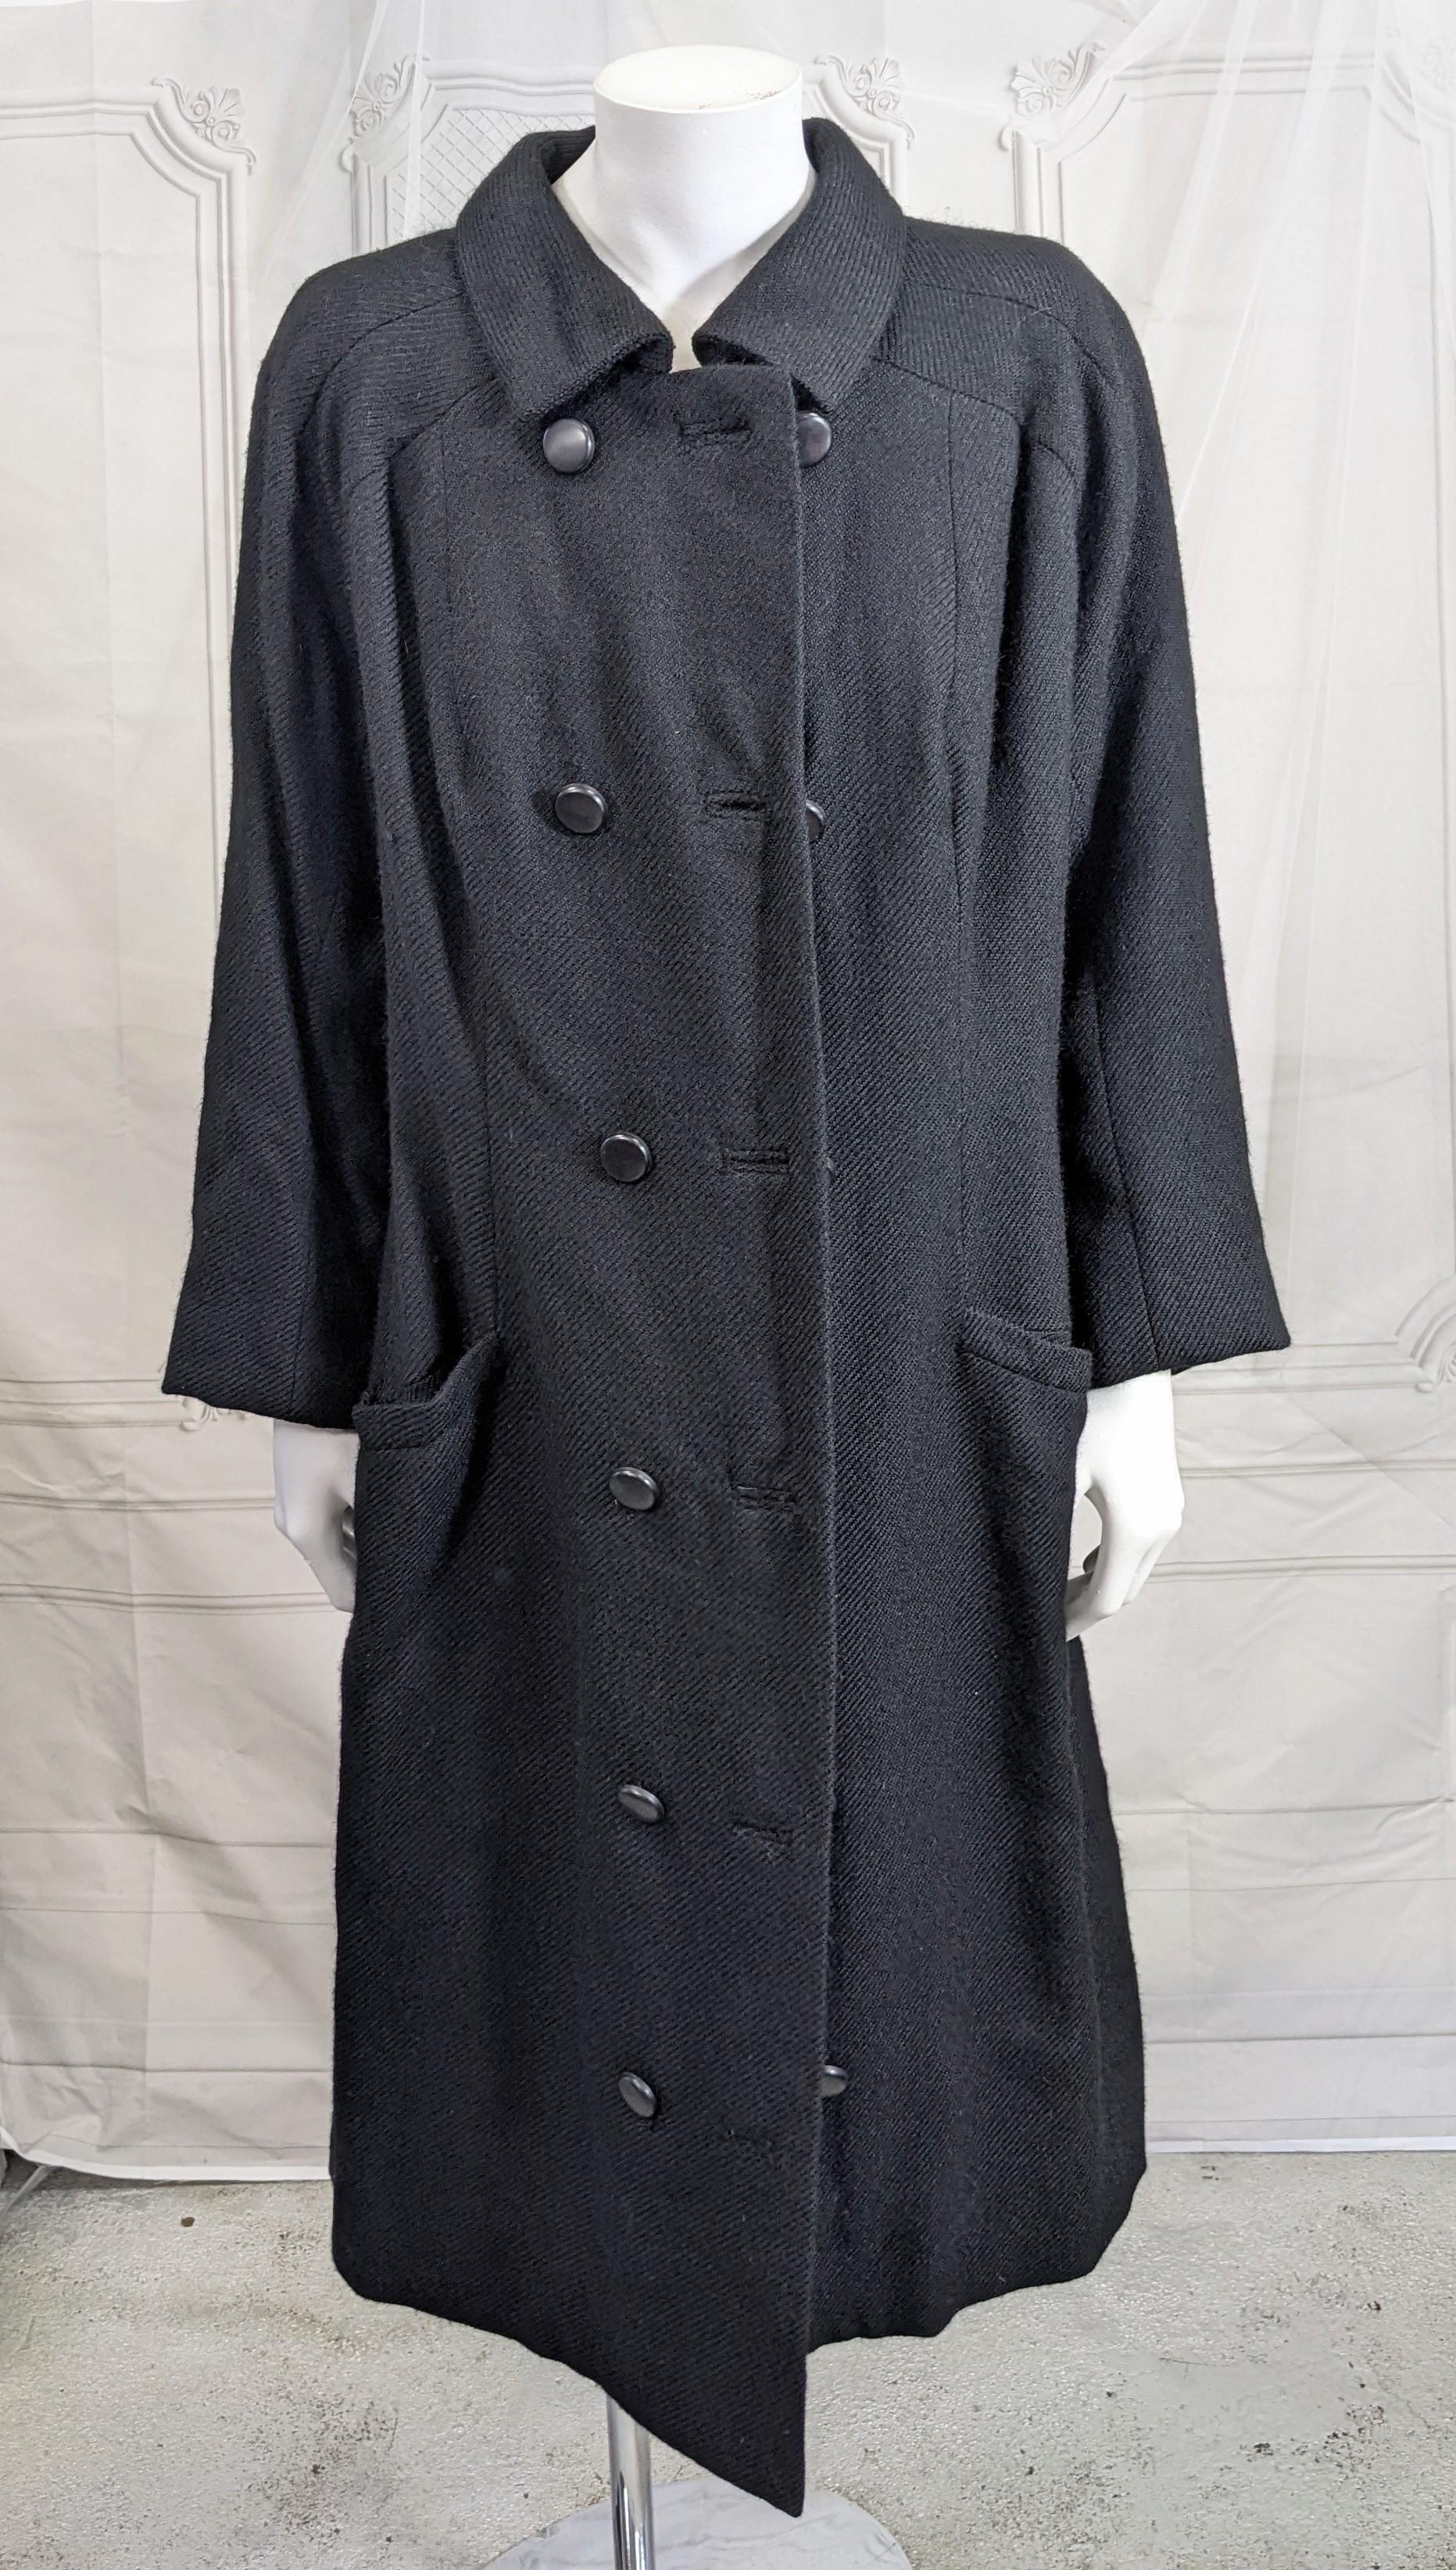 Eisa Manteau Balenciaga Haute Couture.  Ce modèle double boutonnage en sergé de laine texturée noire a été conçu par Cristobal Balenciaga pour Eisa au début des années 1960.
Le manteau coupé semi ajusté avec des boutons en résine bakélite noire est